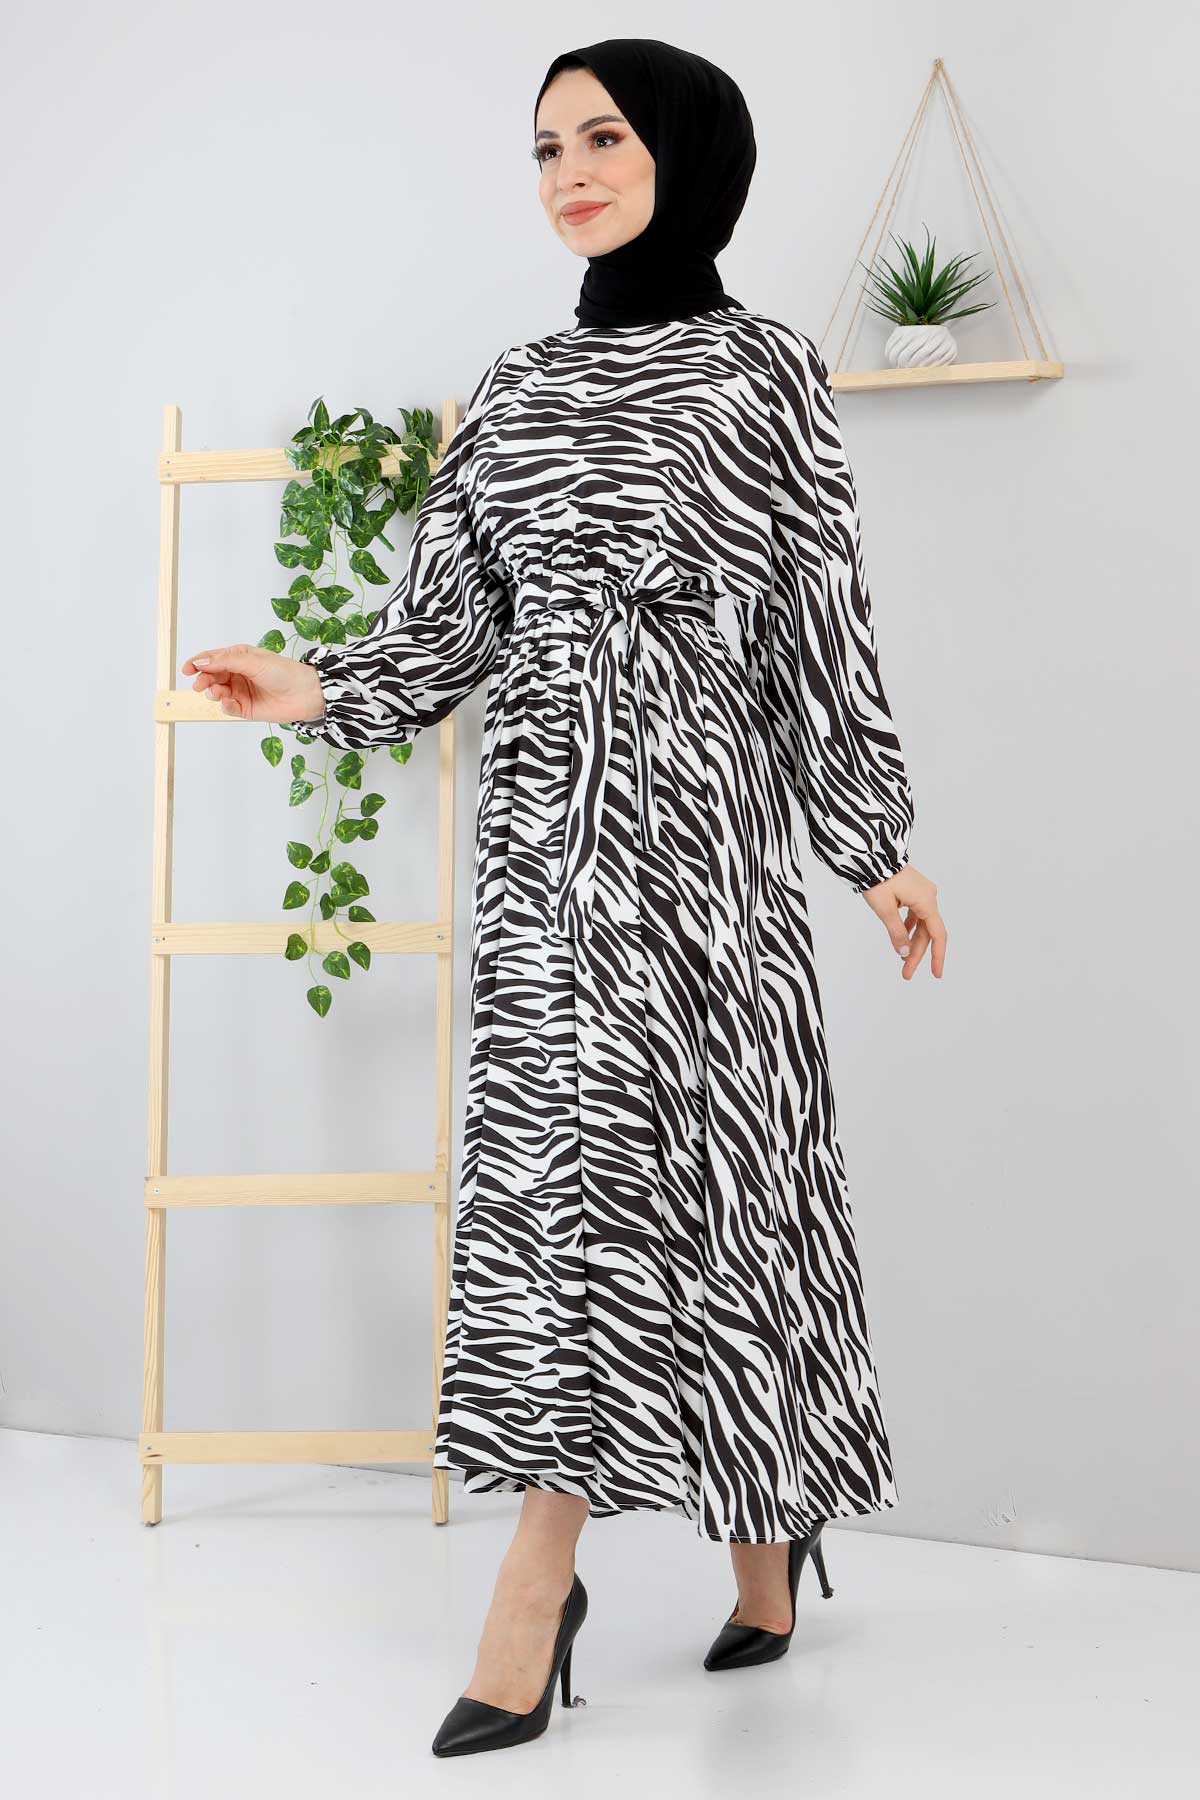 Tesettür Dünyası - Zebra Patterned Dress TSD220113 Black